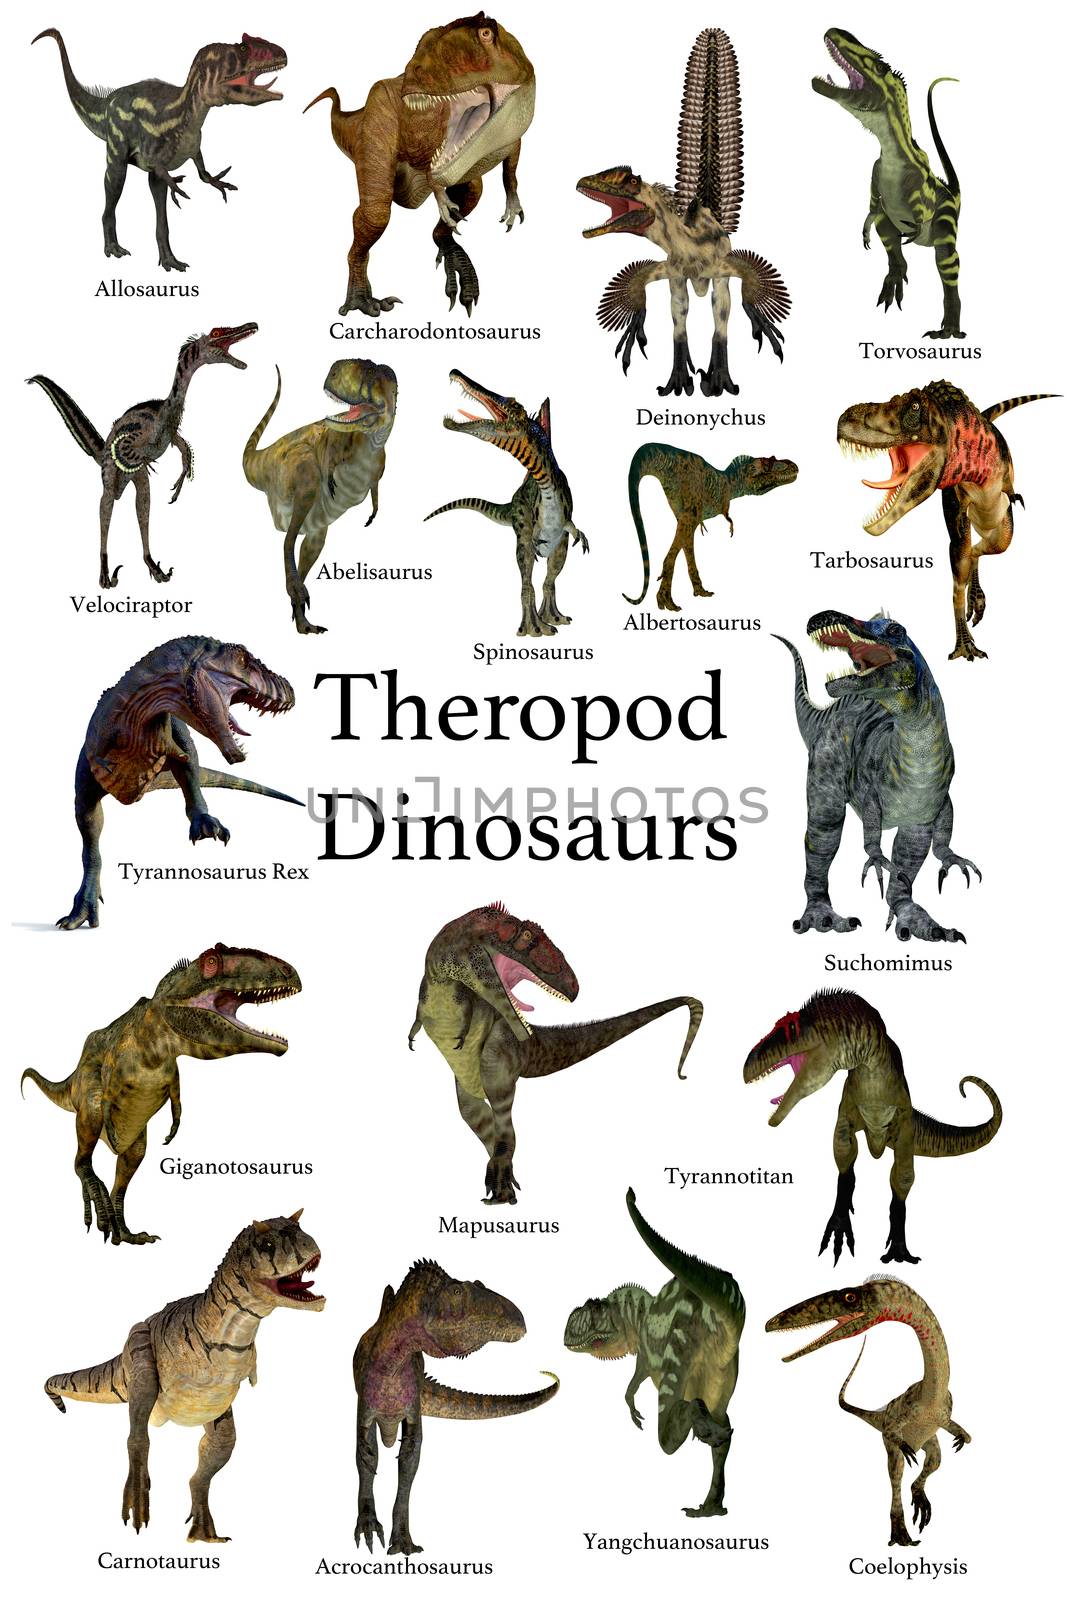 Theropod Dinosaurs by Catmando